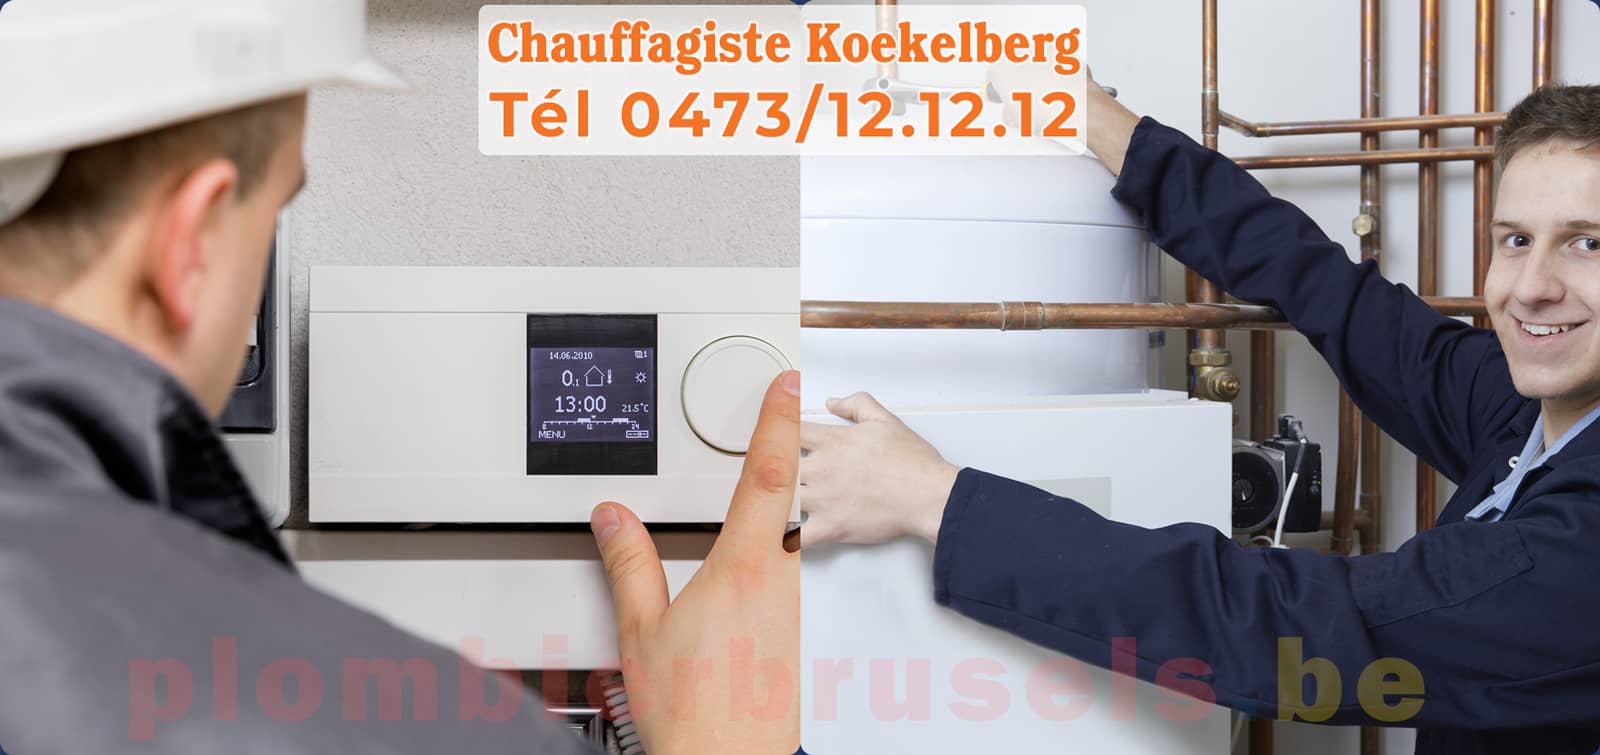 Chauffagiste Koekelberg service de Chauffage tél 0473/12.12.12